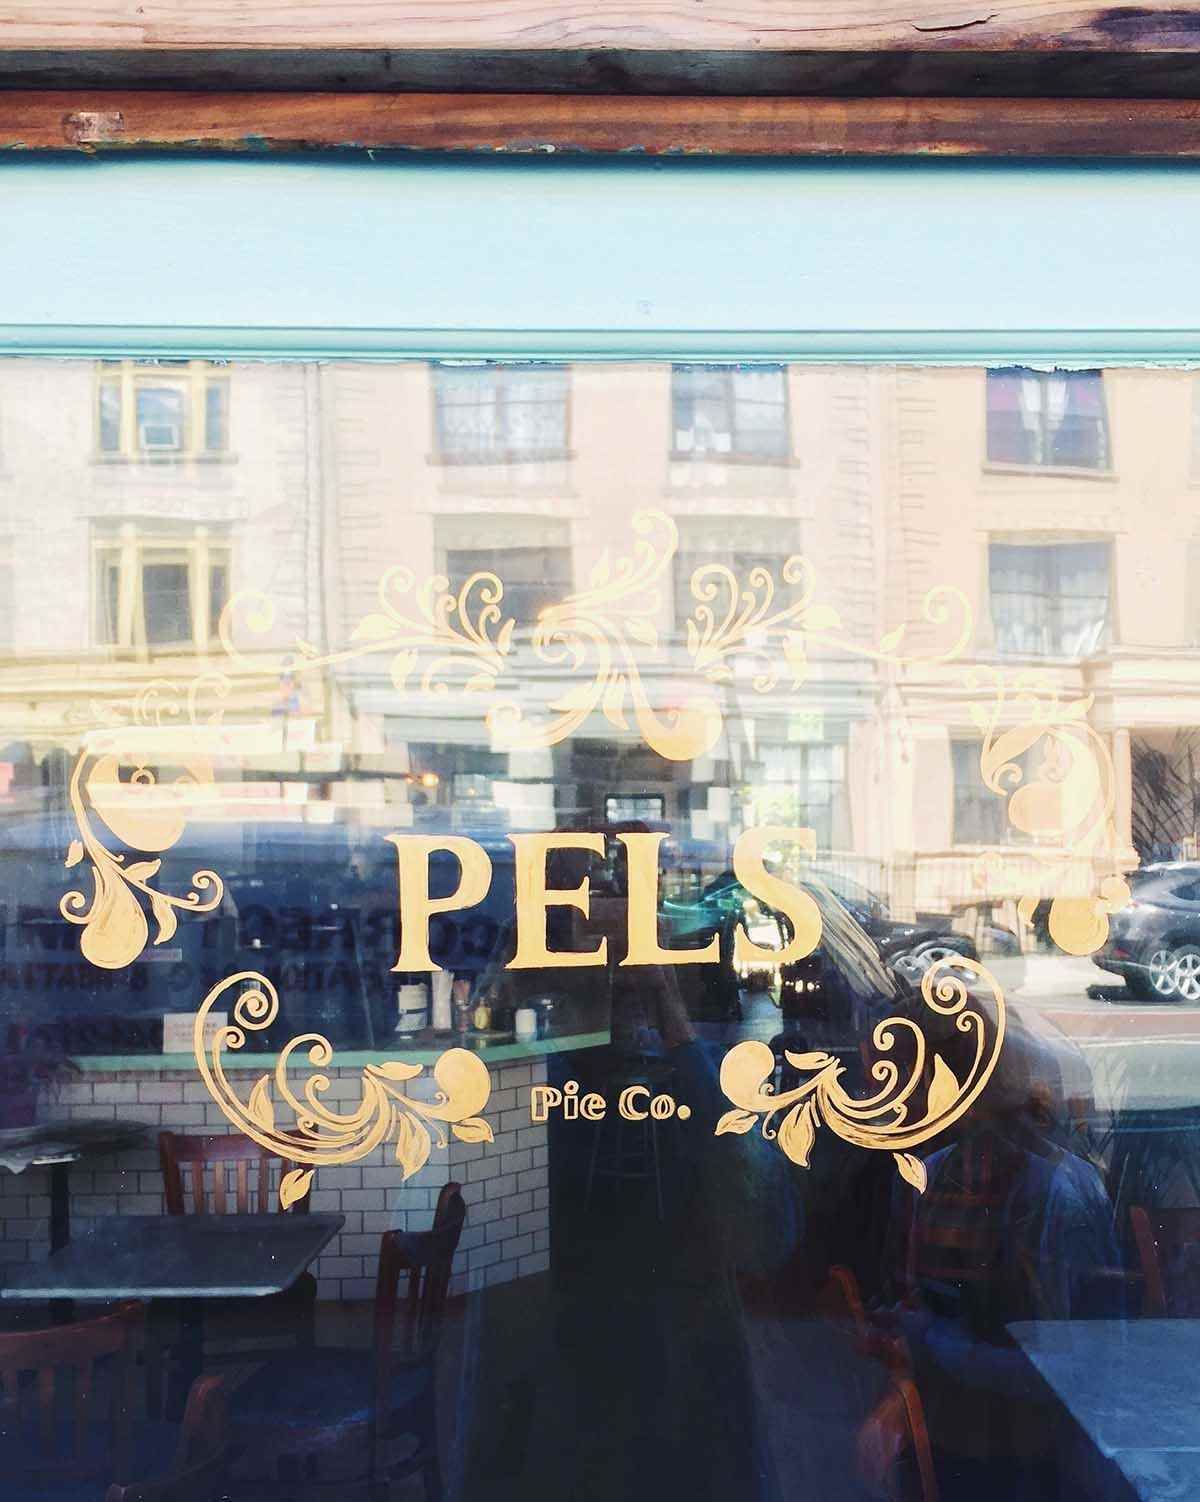 Pel's Pie Co.